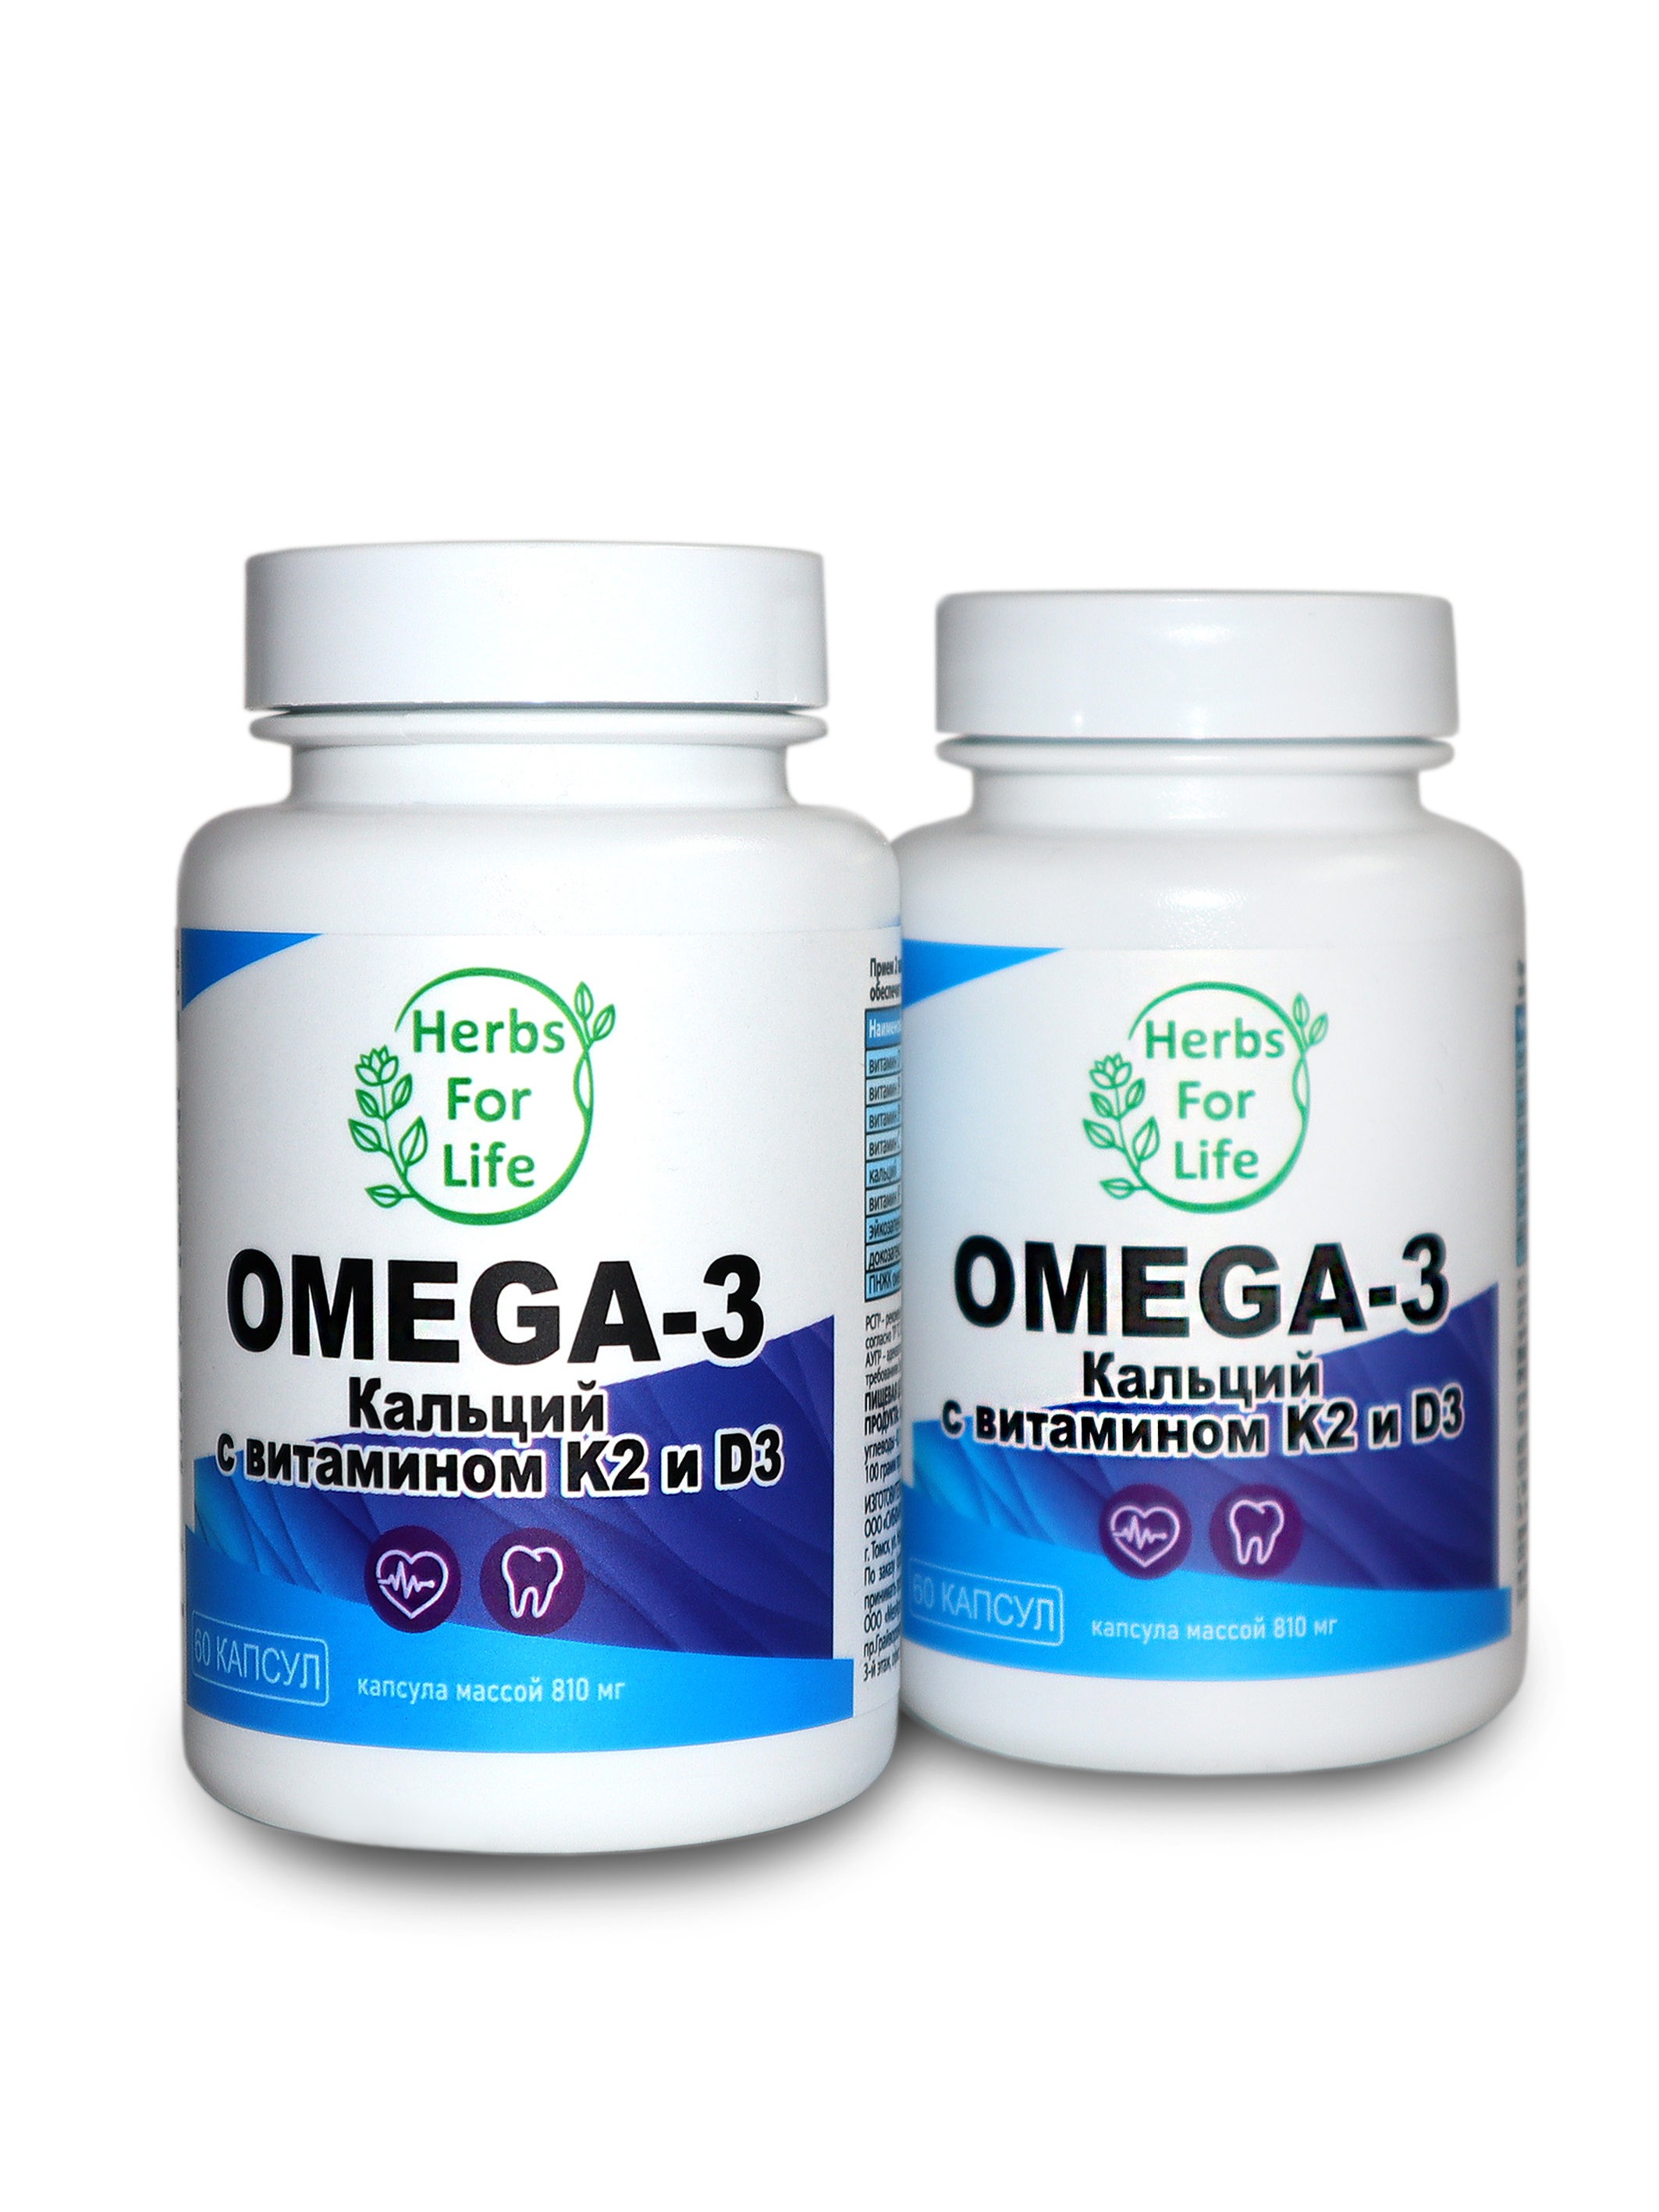 Herbs For Life Омега-3 Кальций с витамином K2 и D3 капсулы 810 мг 60 шт.+60 шт.